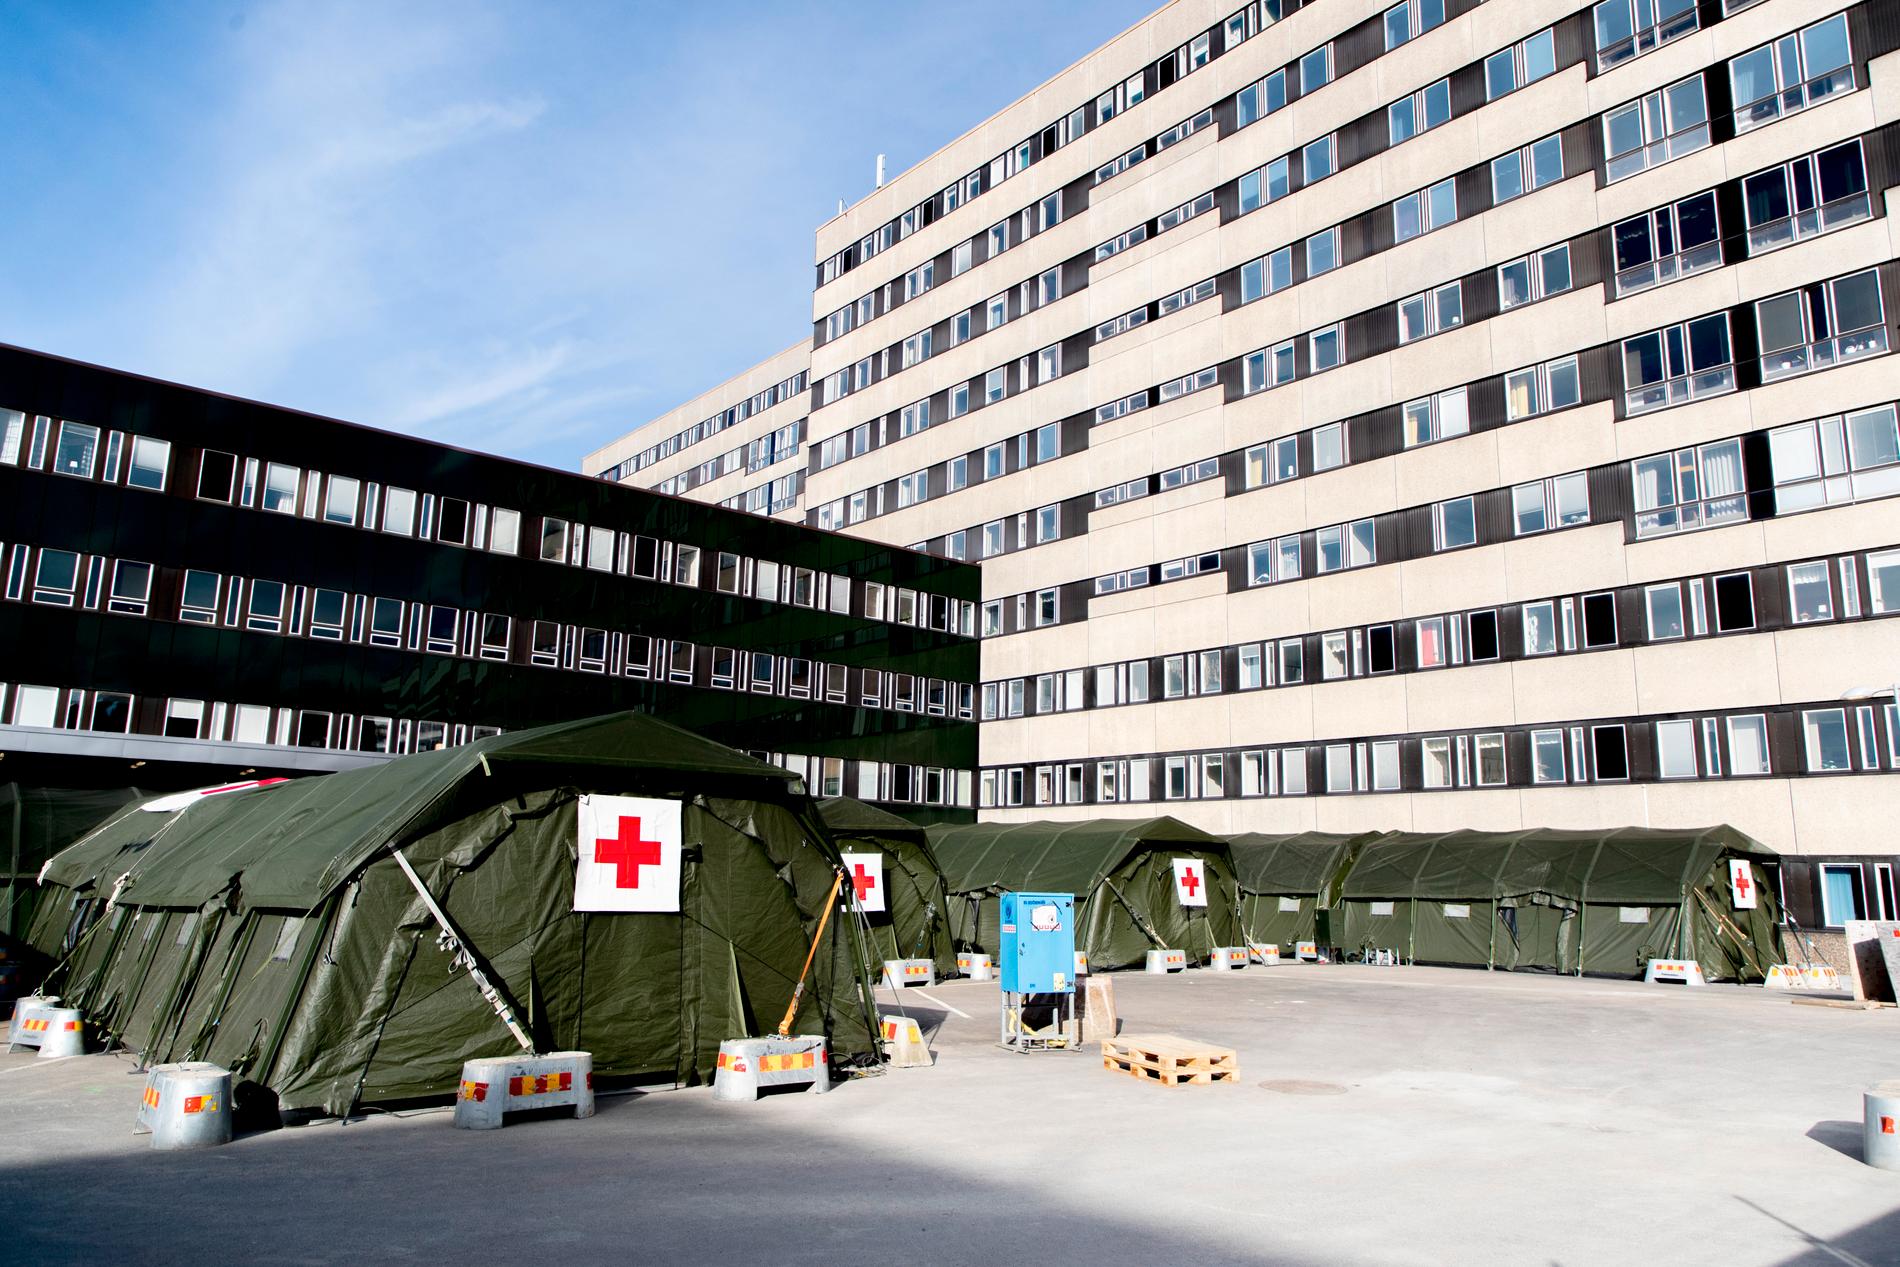 Sjukvårdstälten på Östra sjukhuset i Göteborg. Trycket ökar nu på sjukvården. Arkivbild.